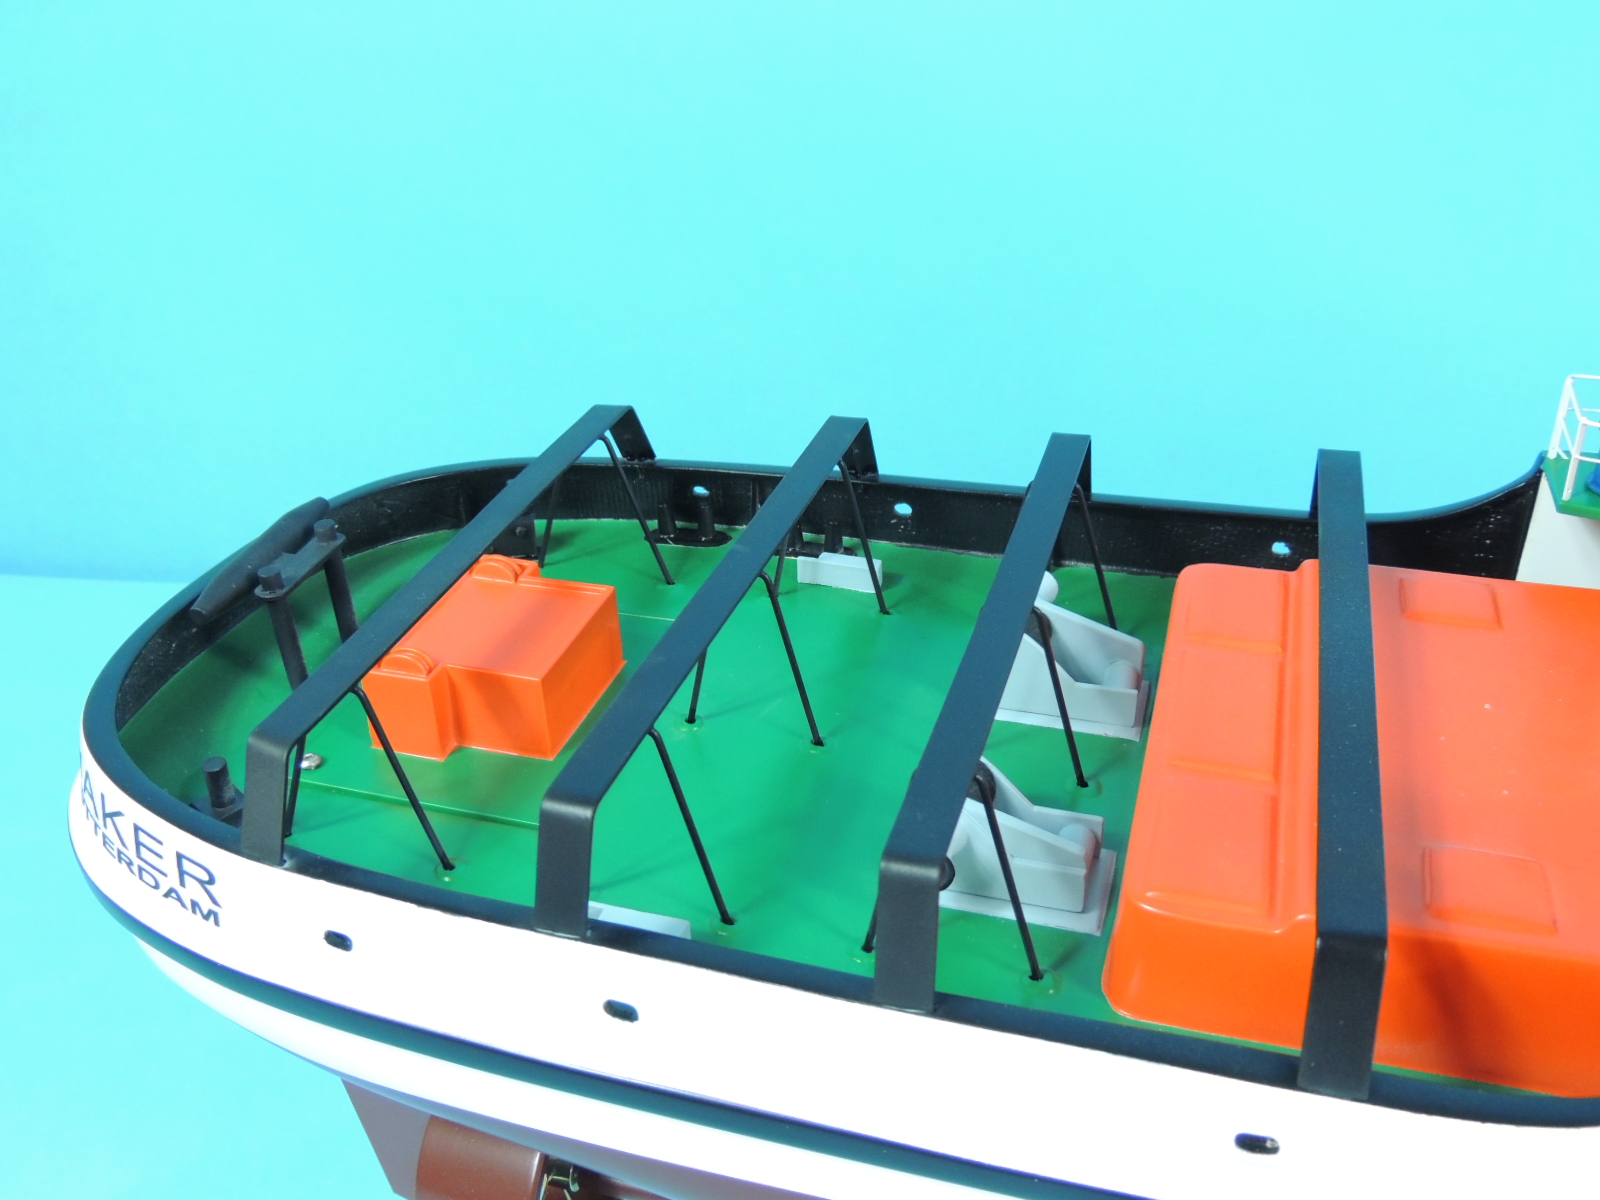 鹿特丹拖船 鹿特丹号拖轮,拖船收费标准,鹿特丹班轮 作者:航者行天下 2820 